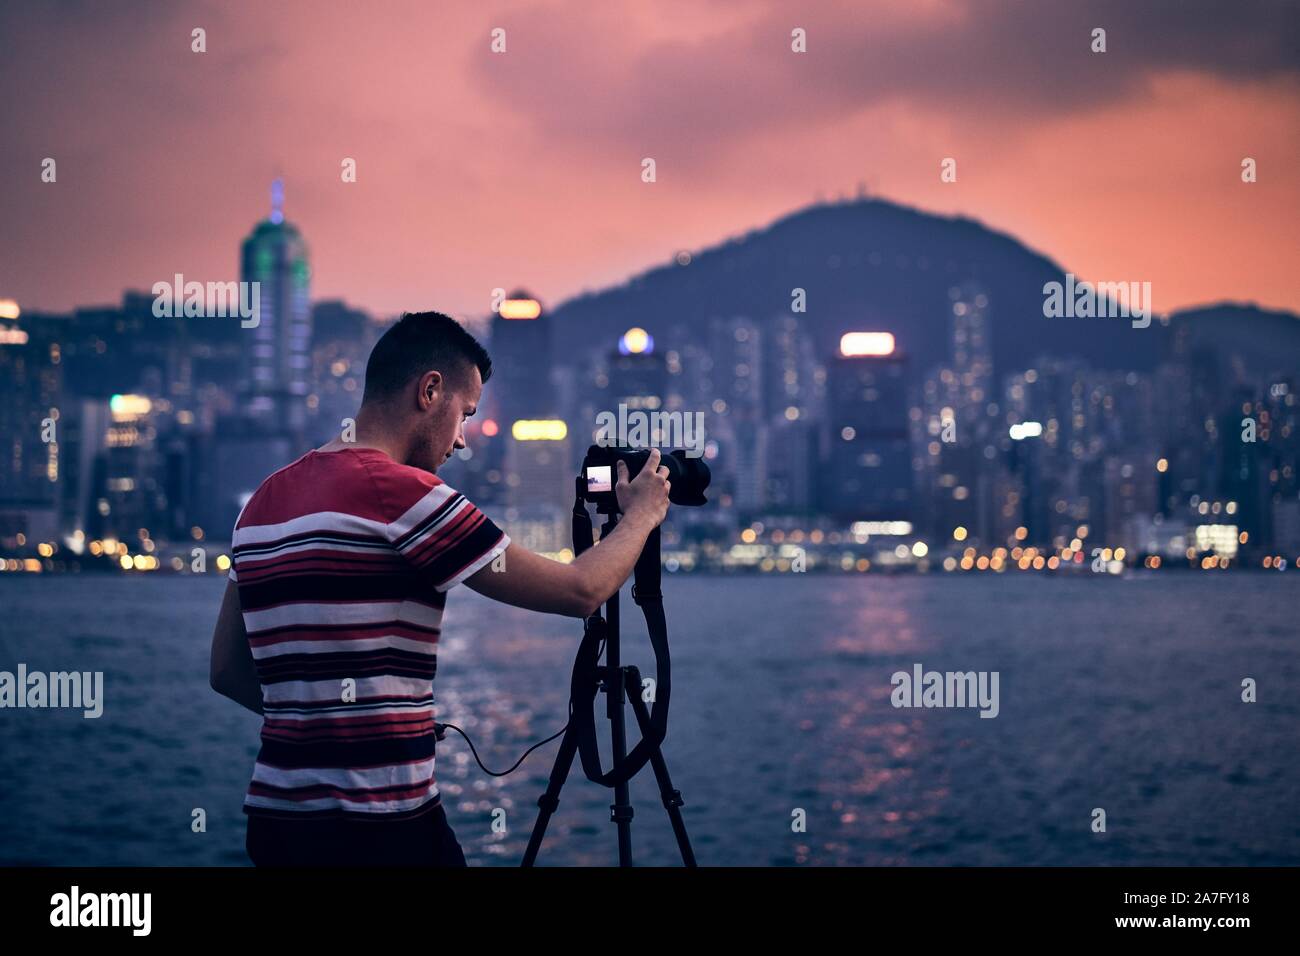 Junge Fotografen (Reisender) mit Stativ fotografieren Städtischen Skyline bei Sonnenuntergang, Hong Kong. Stockfoto